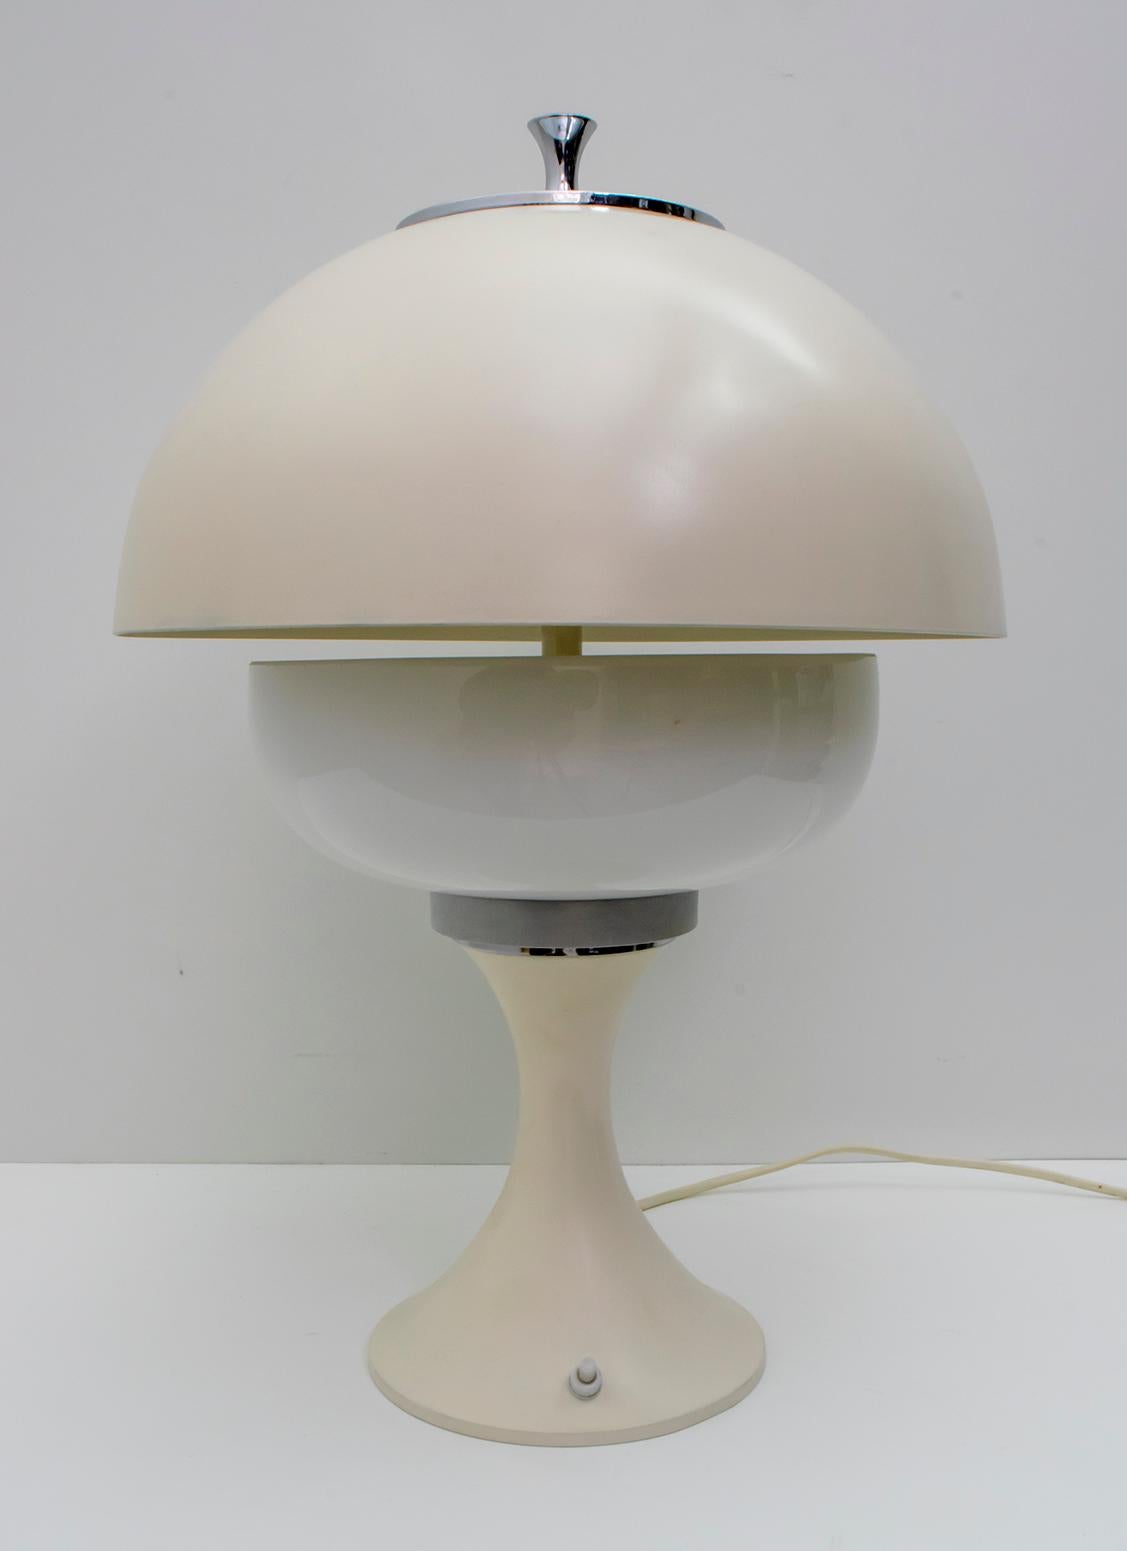 Pair of After Gaetano Sciolari Midcentury Italian Lamps, 1960s For Sale 2